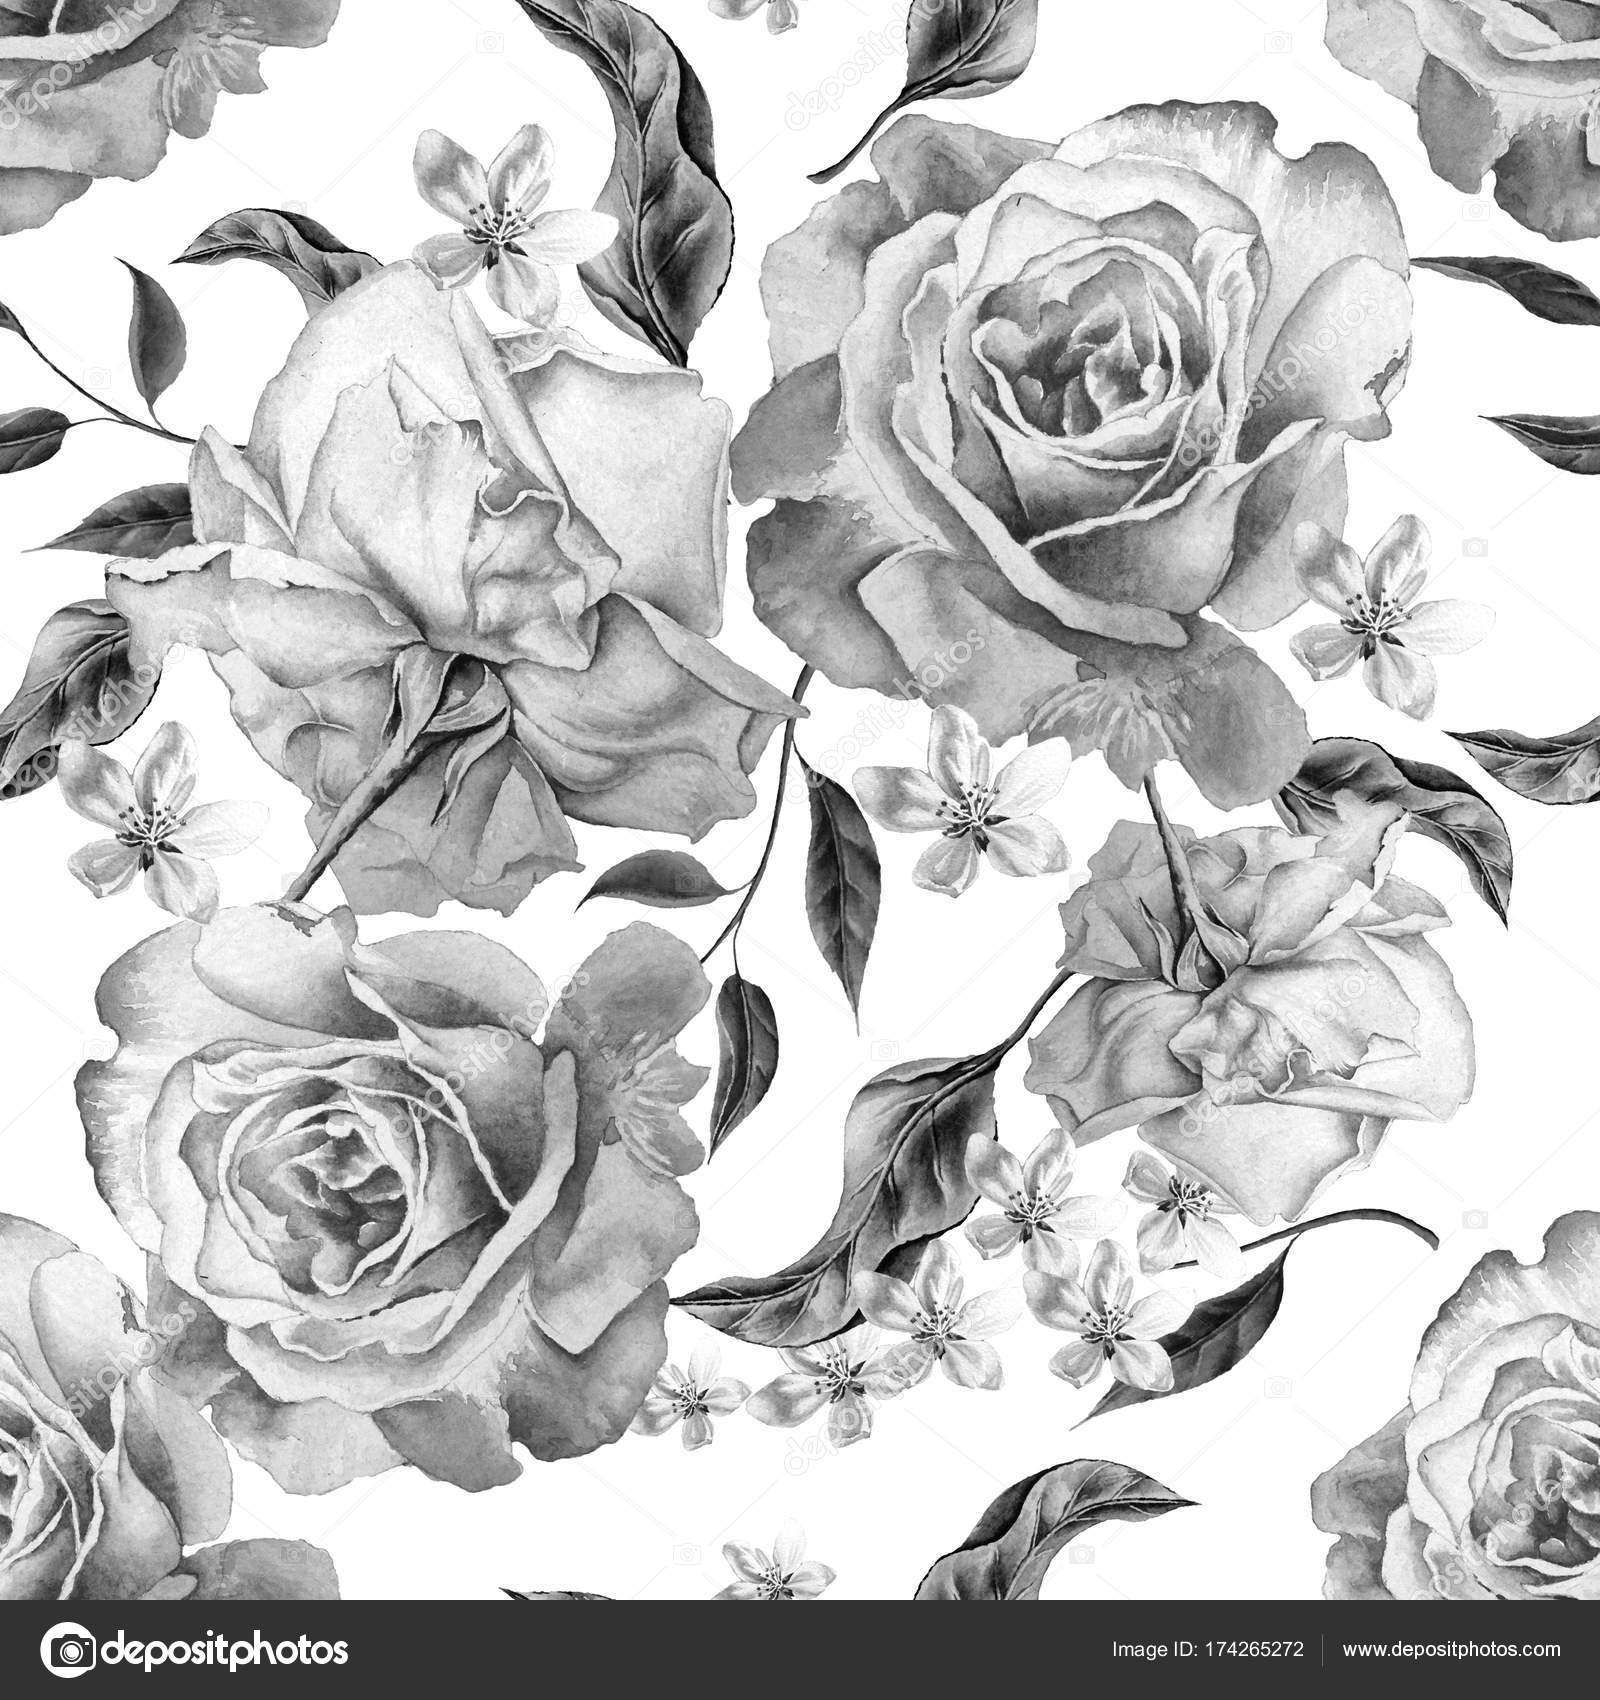 50 素晴らしい薔薇 イラスト 白黒 日本のイラスト